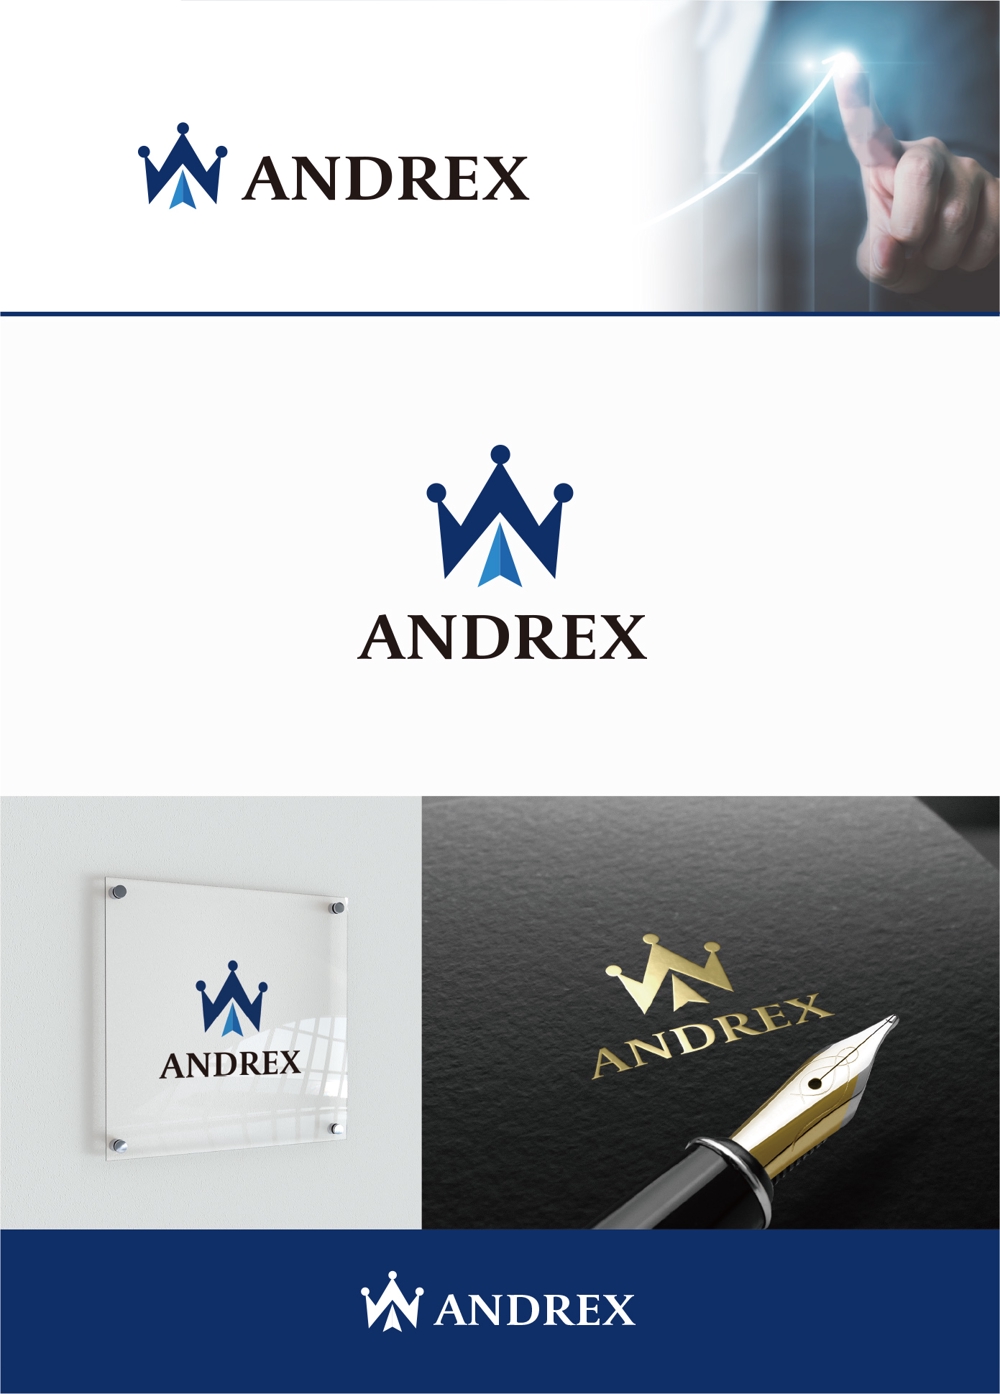 ANDREX_1.jpg